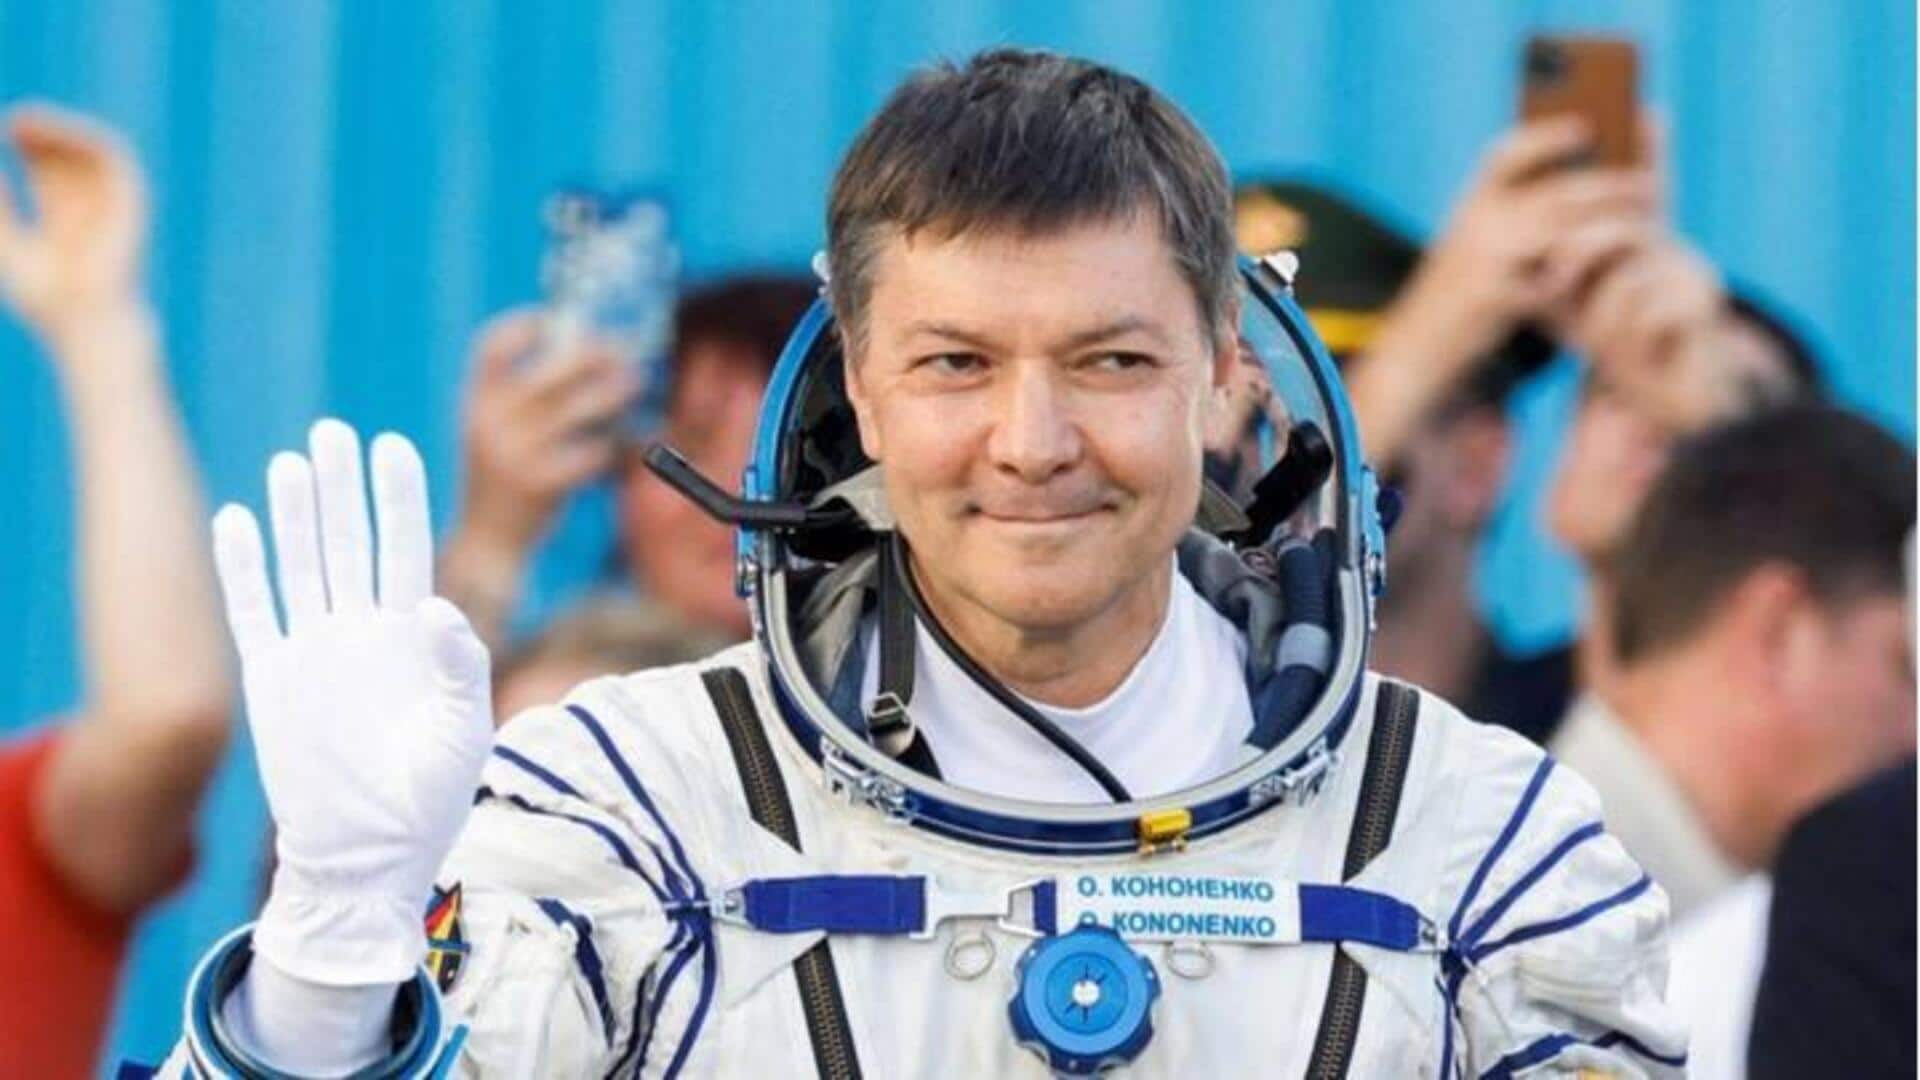 Temui Oleg Kononenko: Pemegang rekor waktu terlama di luar angkasa